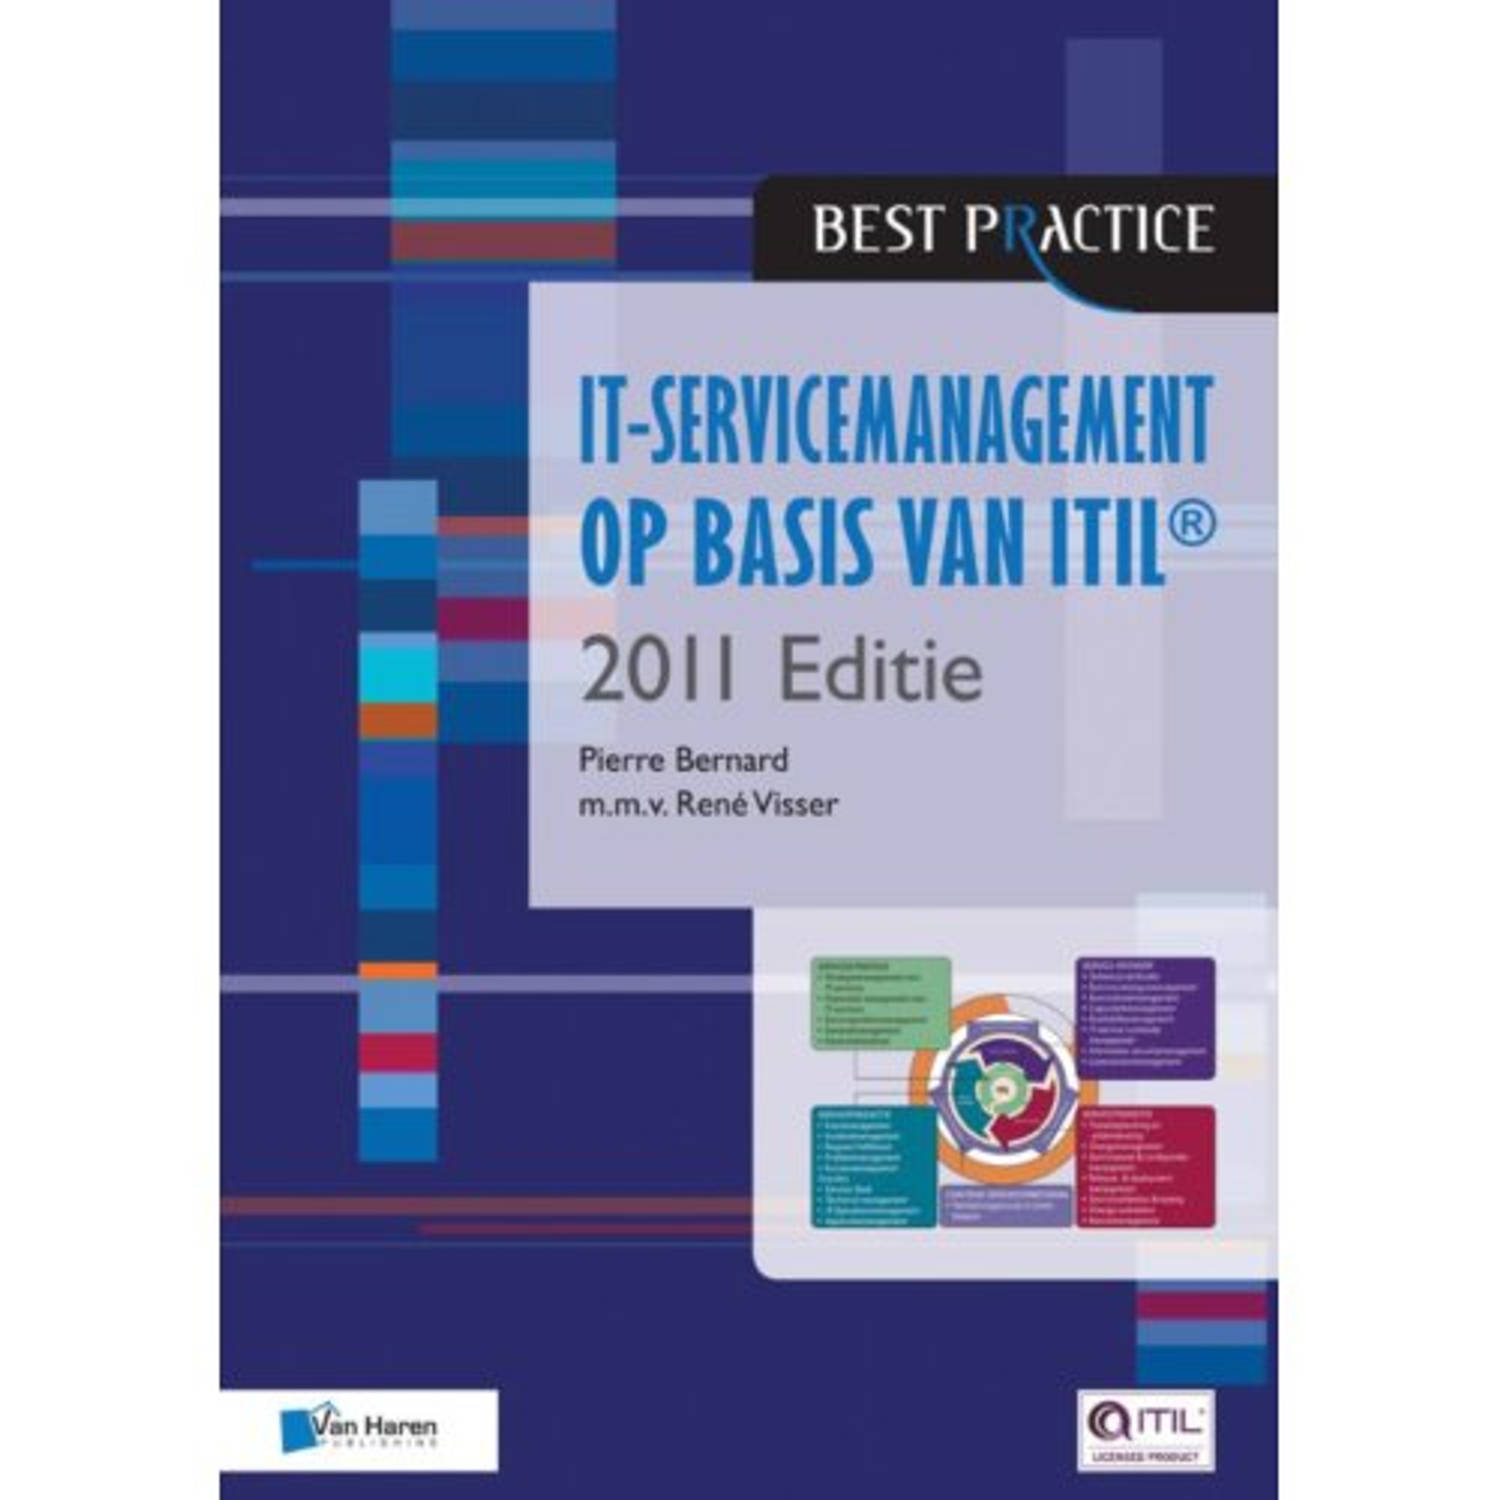 It-Servicemanagement Op Basis Van Itil / 2011